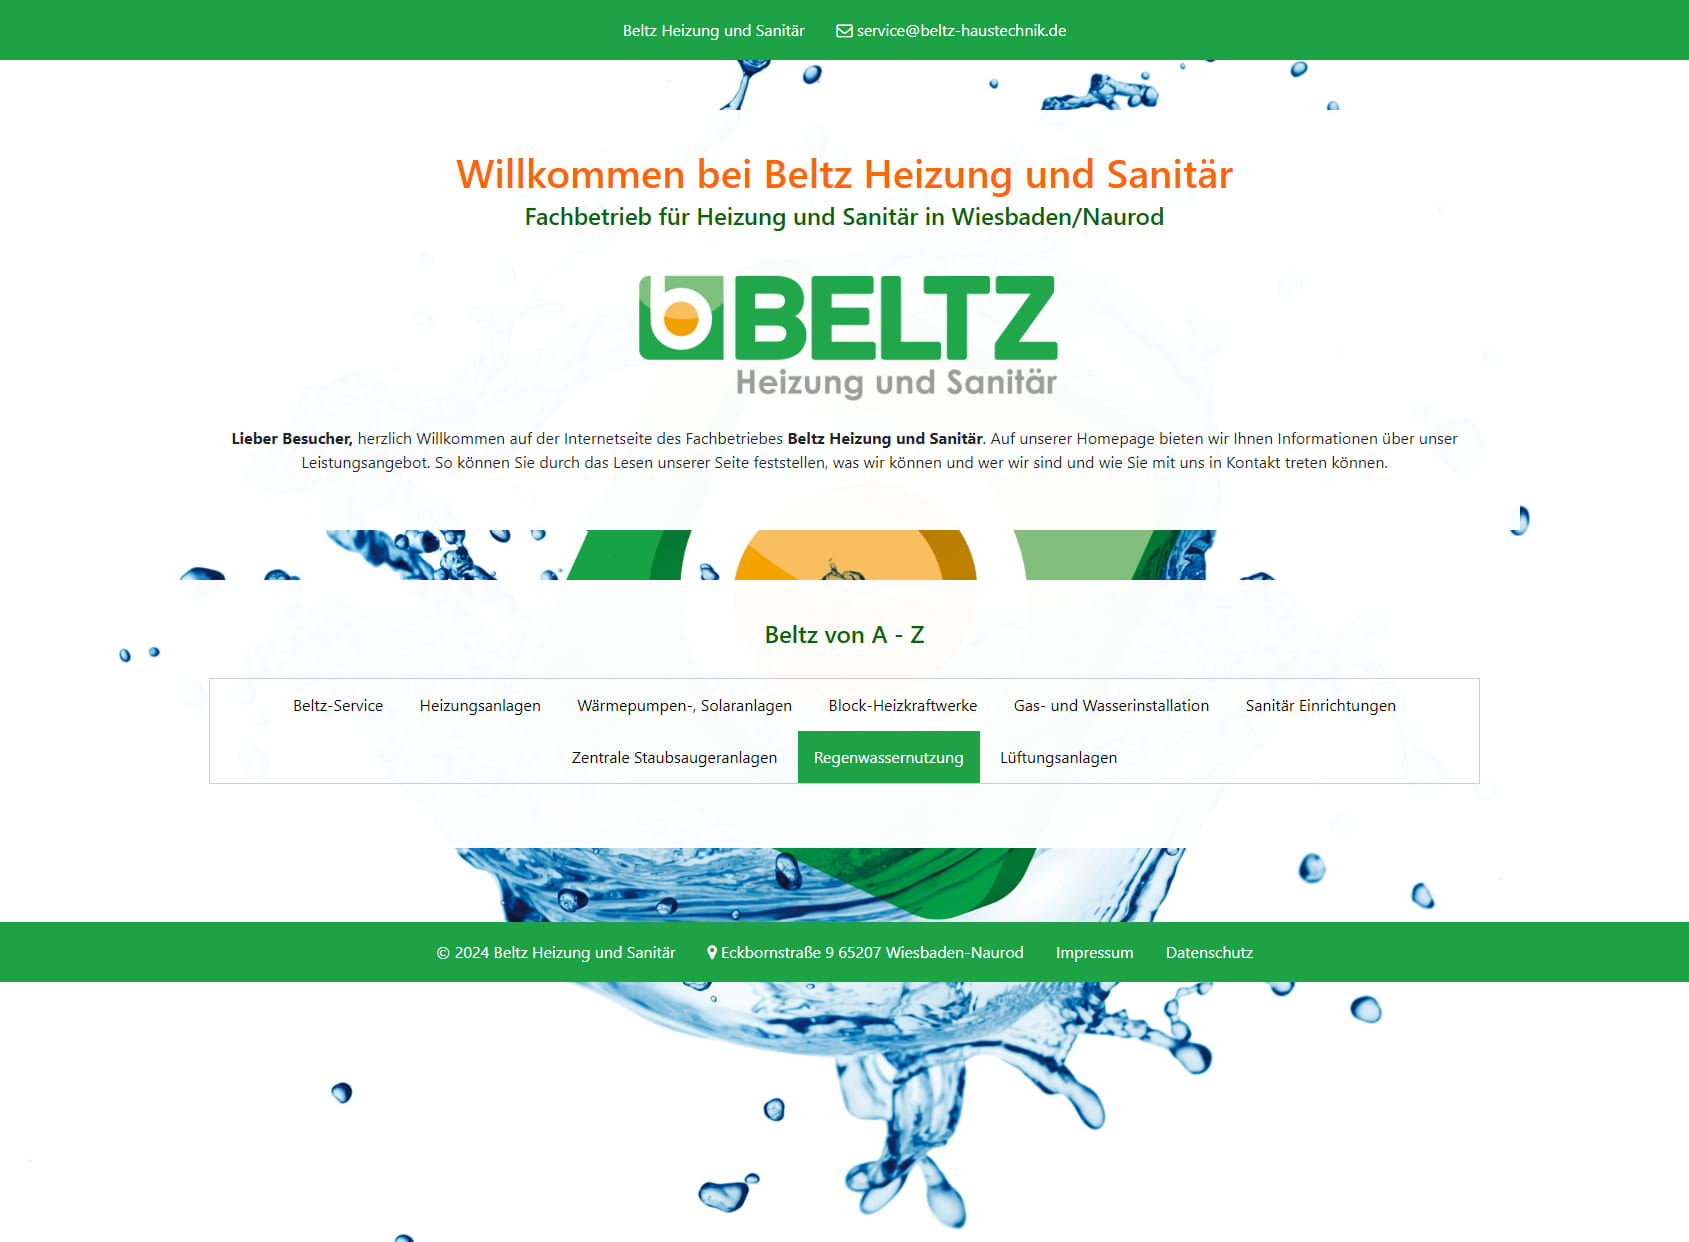 BELTZ - Fachbetrieb für Heizung und Sanitär in Wiesbaden/Naurod